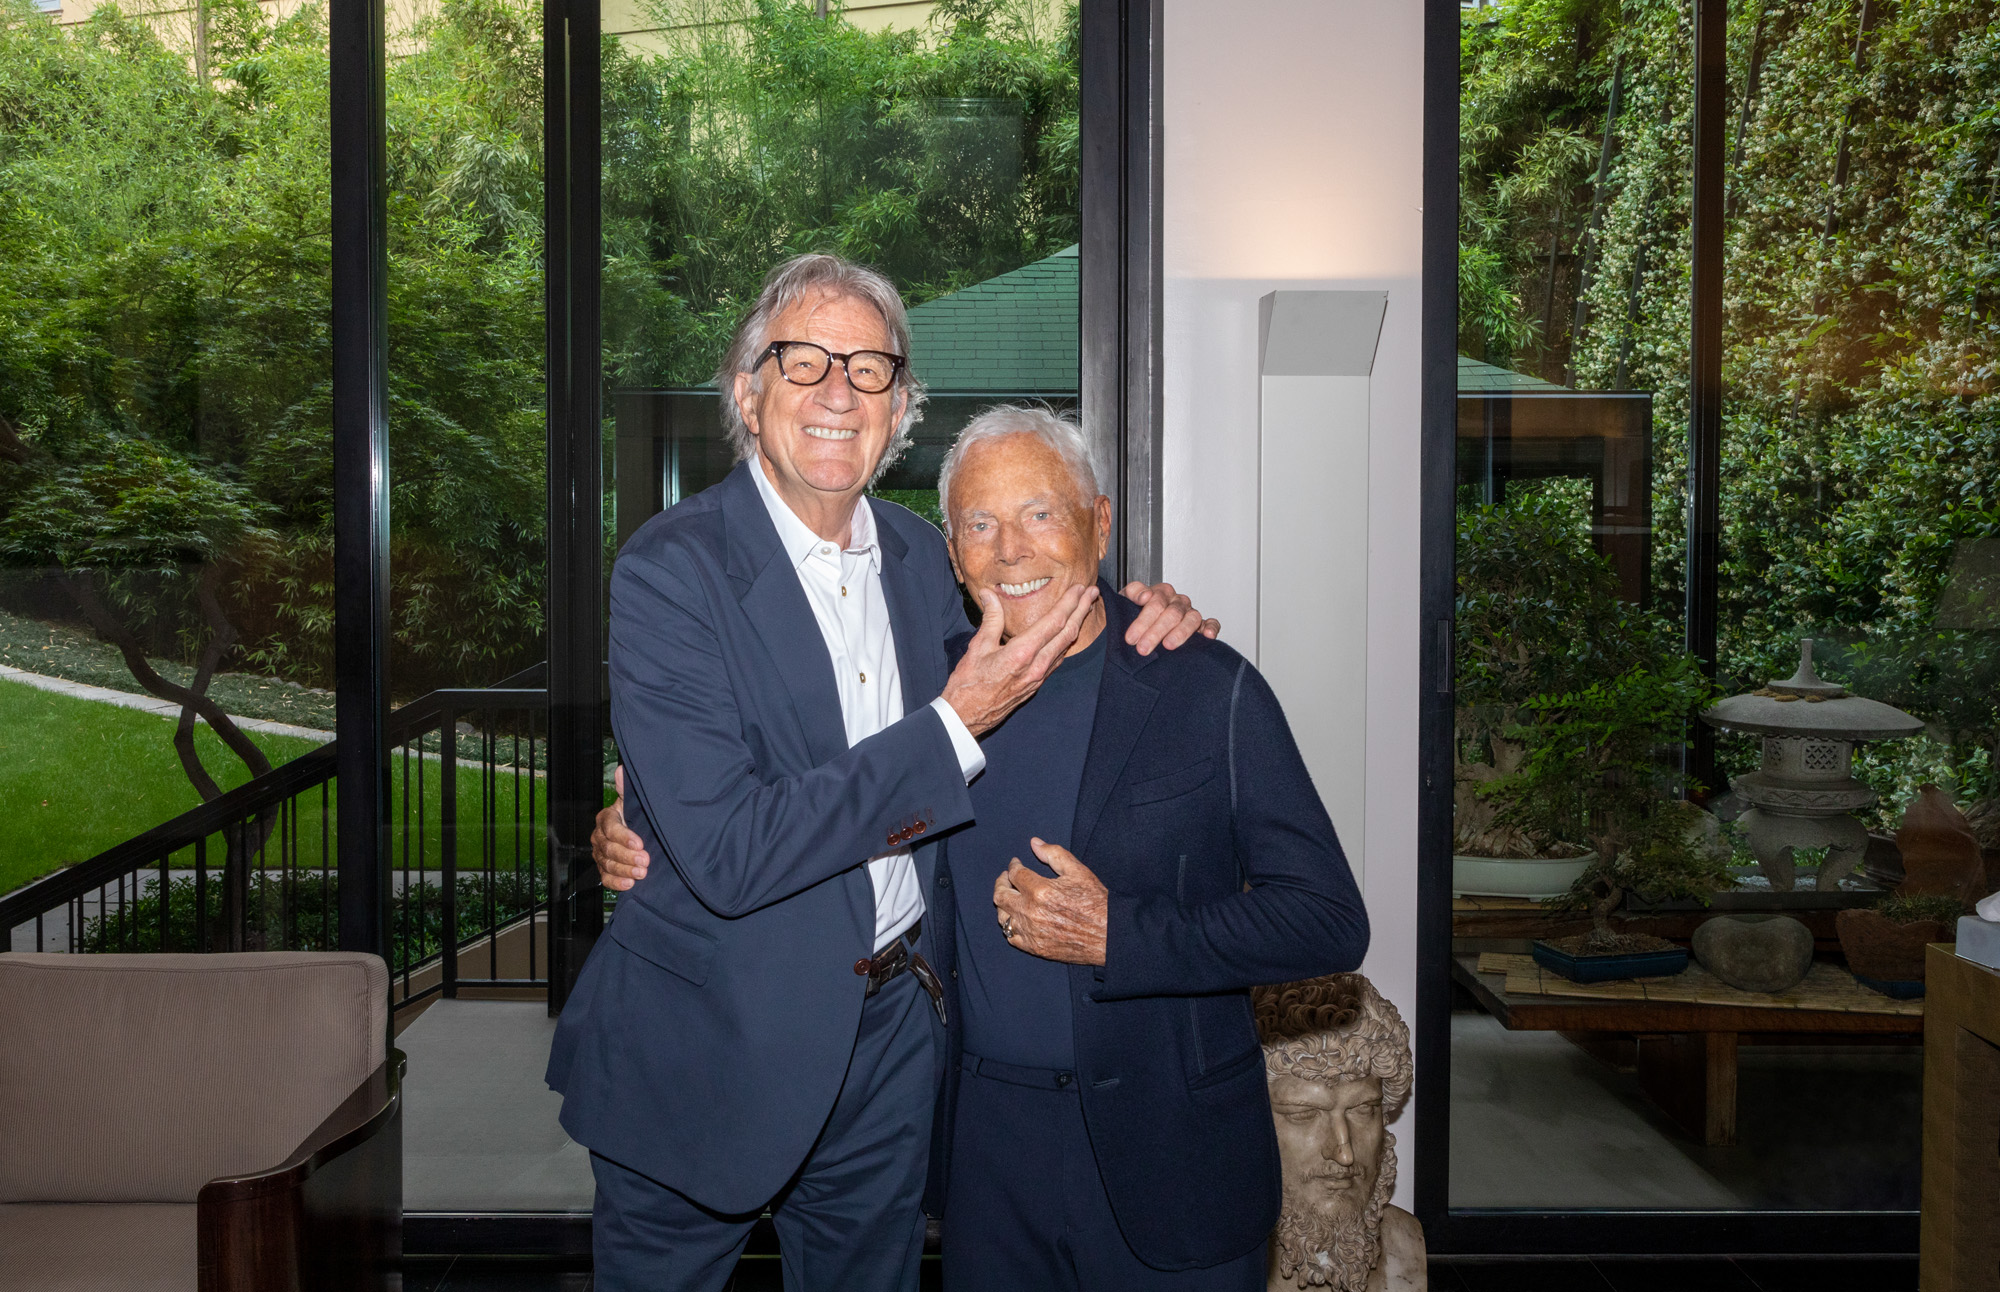 In conversation: when Giorgio Armani met Paul Smith